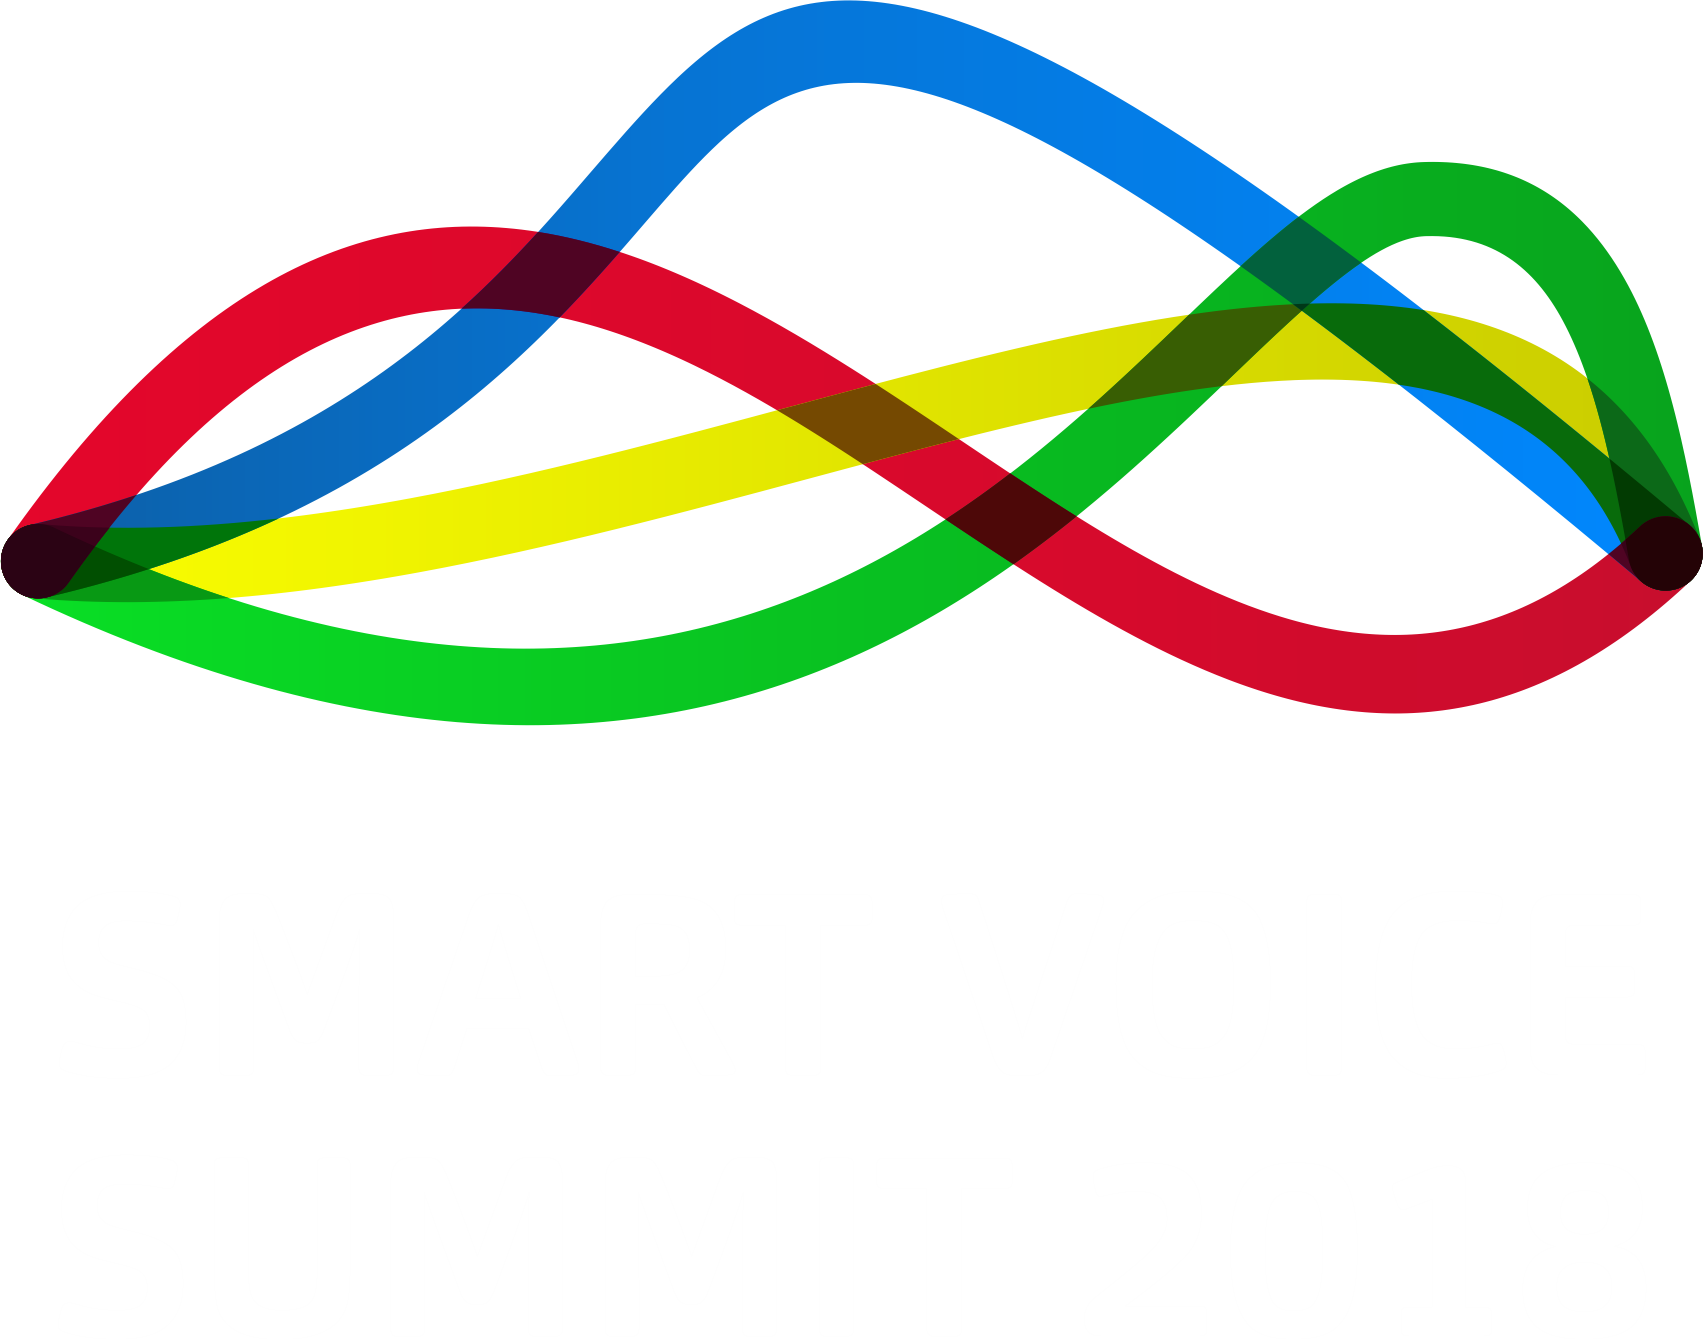 2018 Smart Voice Summit - Voice Summit (1703x1339)